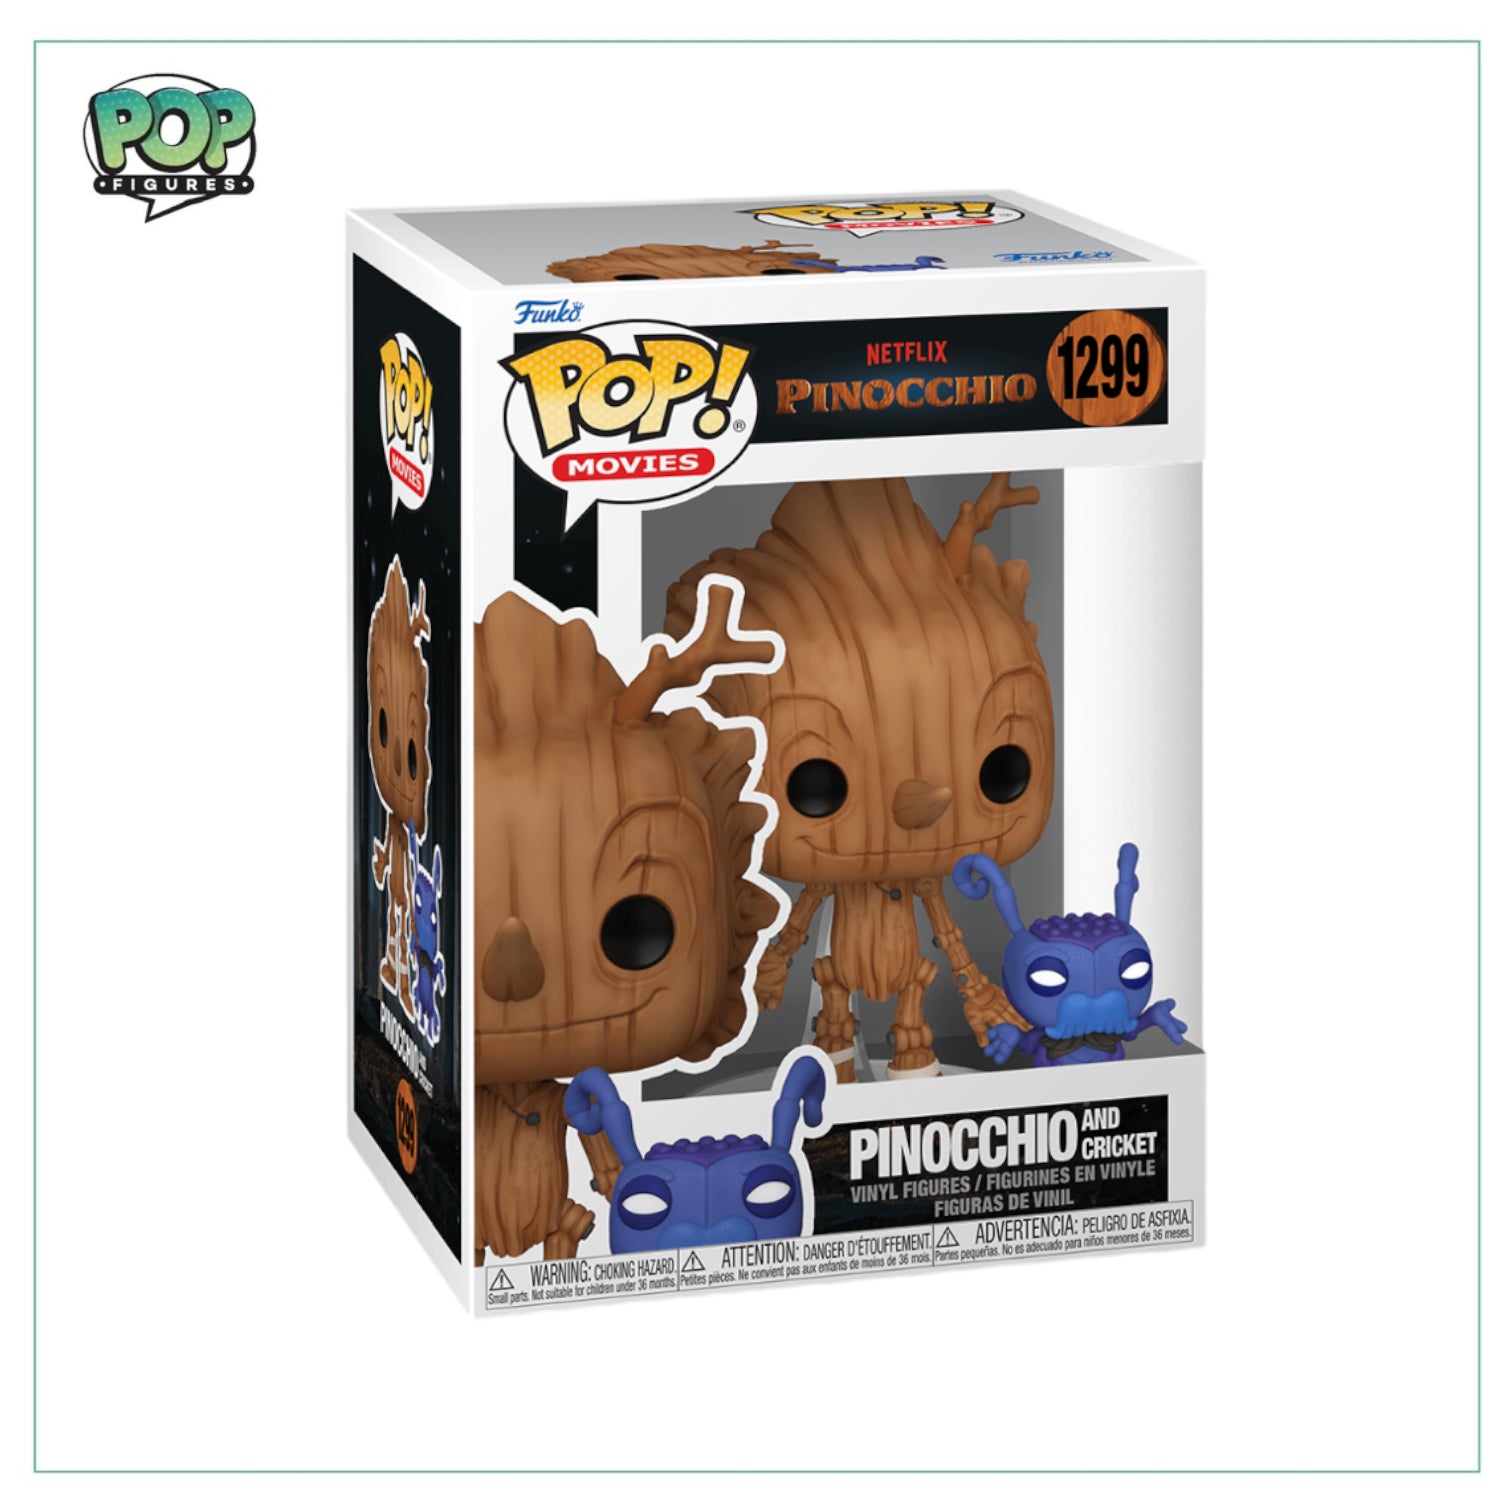 Pinocchio W/ Cricket #1299 Funko Pop! - Pinocchio